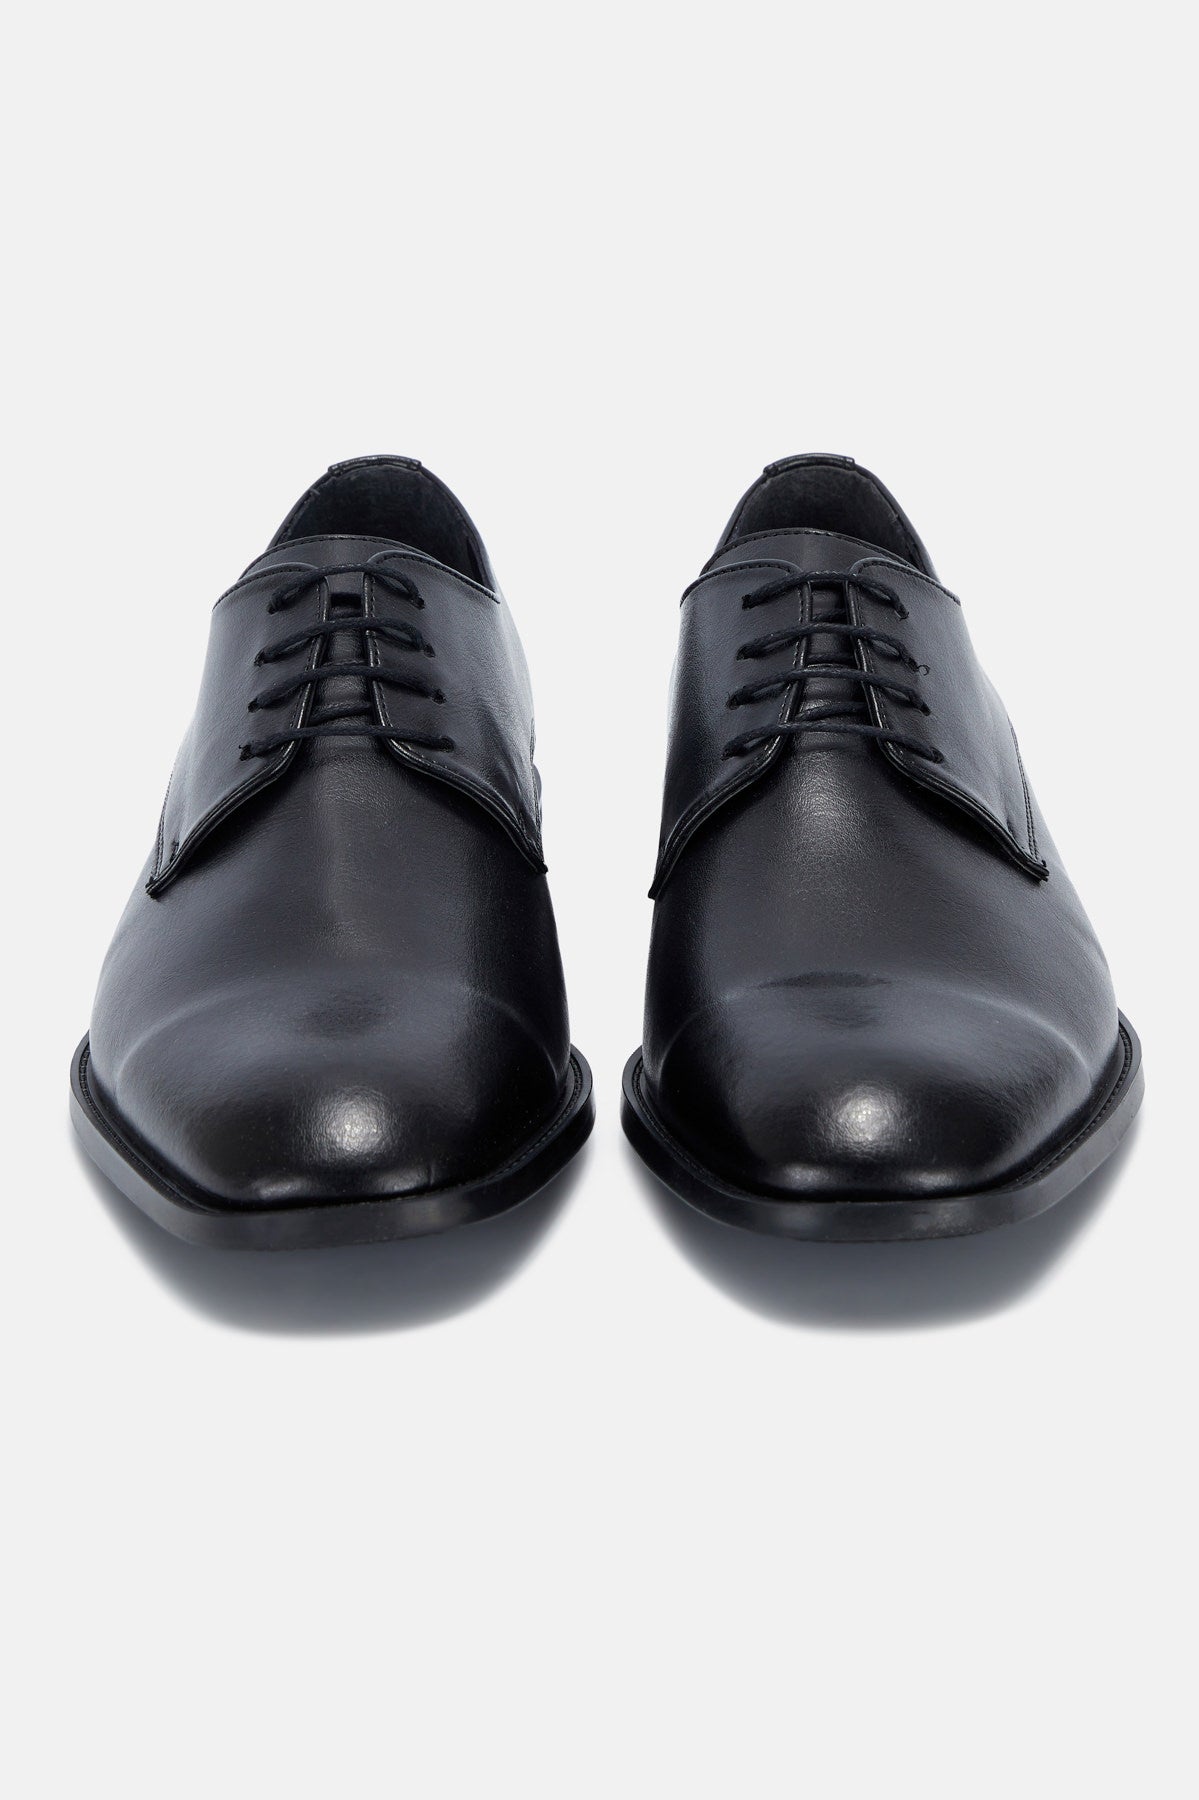 Edward Black Lace Up Men's Shoe